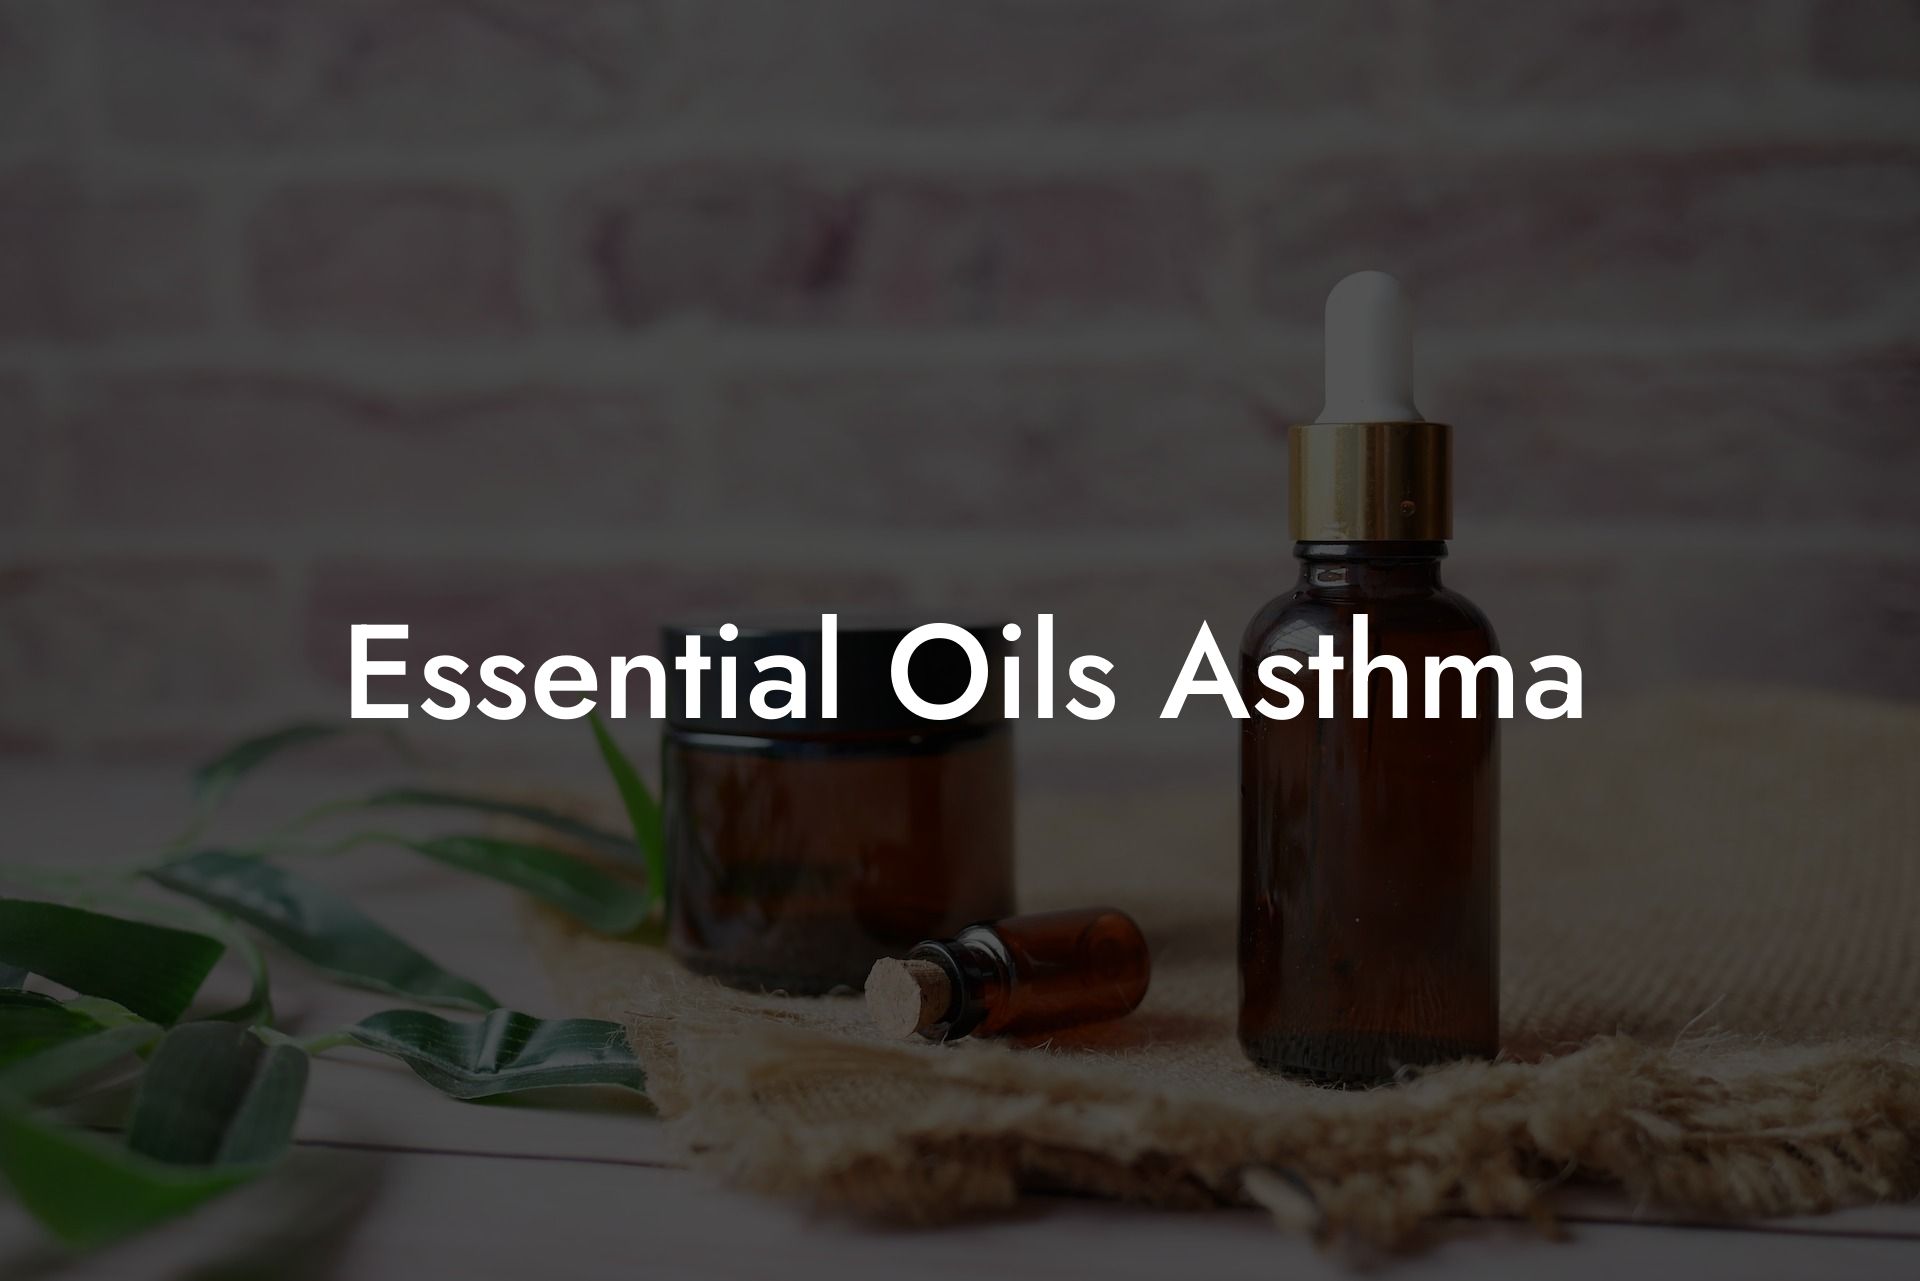 Essential Oils Asthma